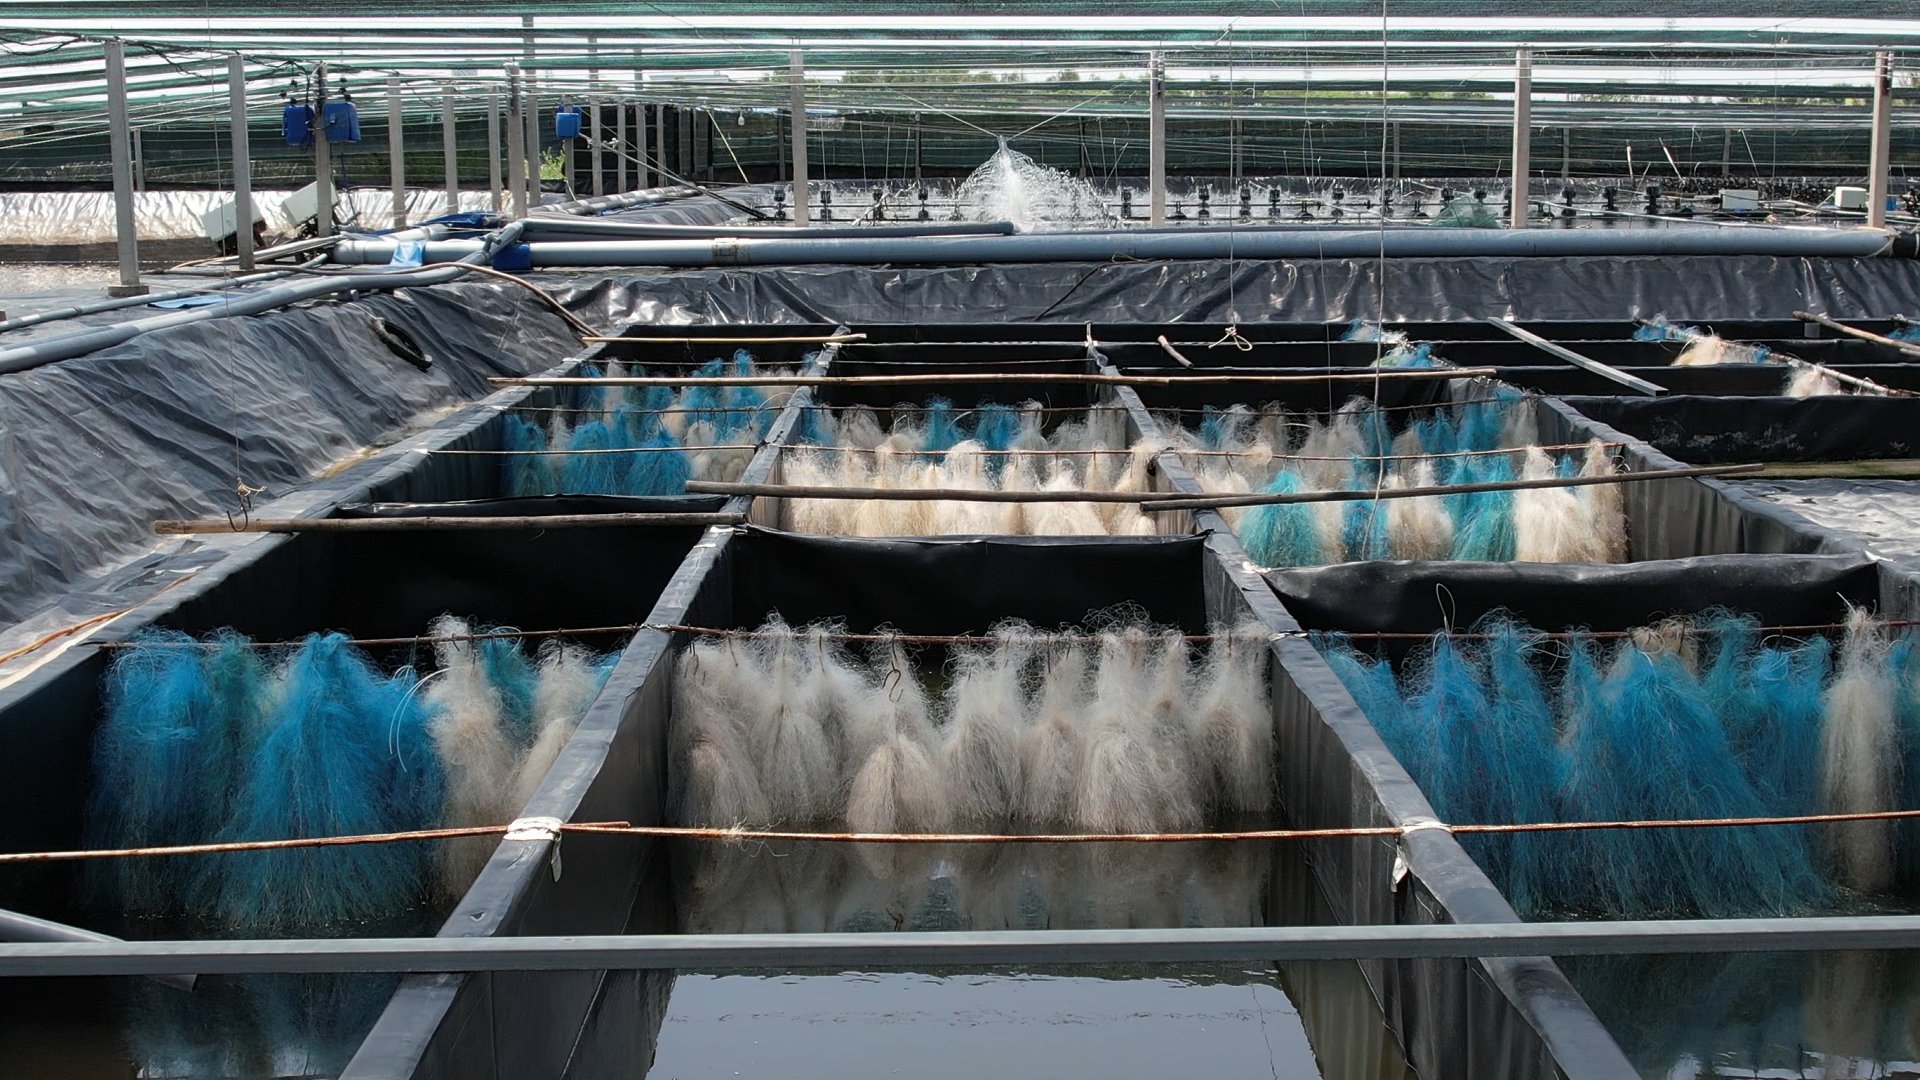 GrowMax đã phát triển thành công quy trình 'Nuôi tôm công nghệ cao tuần hoàn nước' với nhiều ưu điểm vượt trội như: Chi phí đầu tư thấp, hoàn toàn không sử dụng kháng sinh trong suốt quá trình nuôi, tạo ra sản phẩm về tôm sạch, an toàn và hạn chế được dịch bệnh...